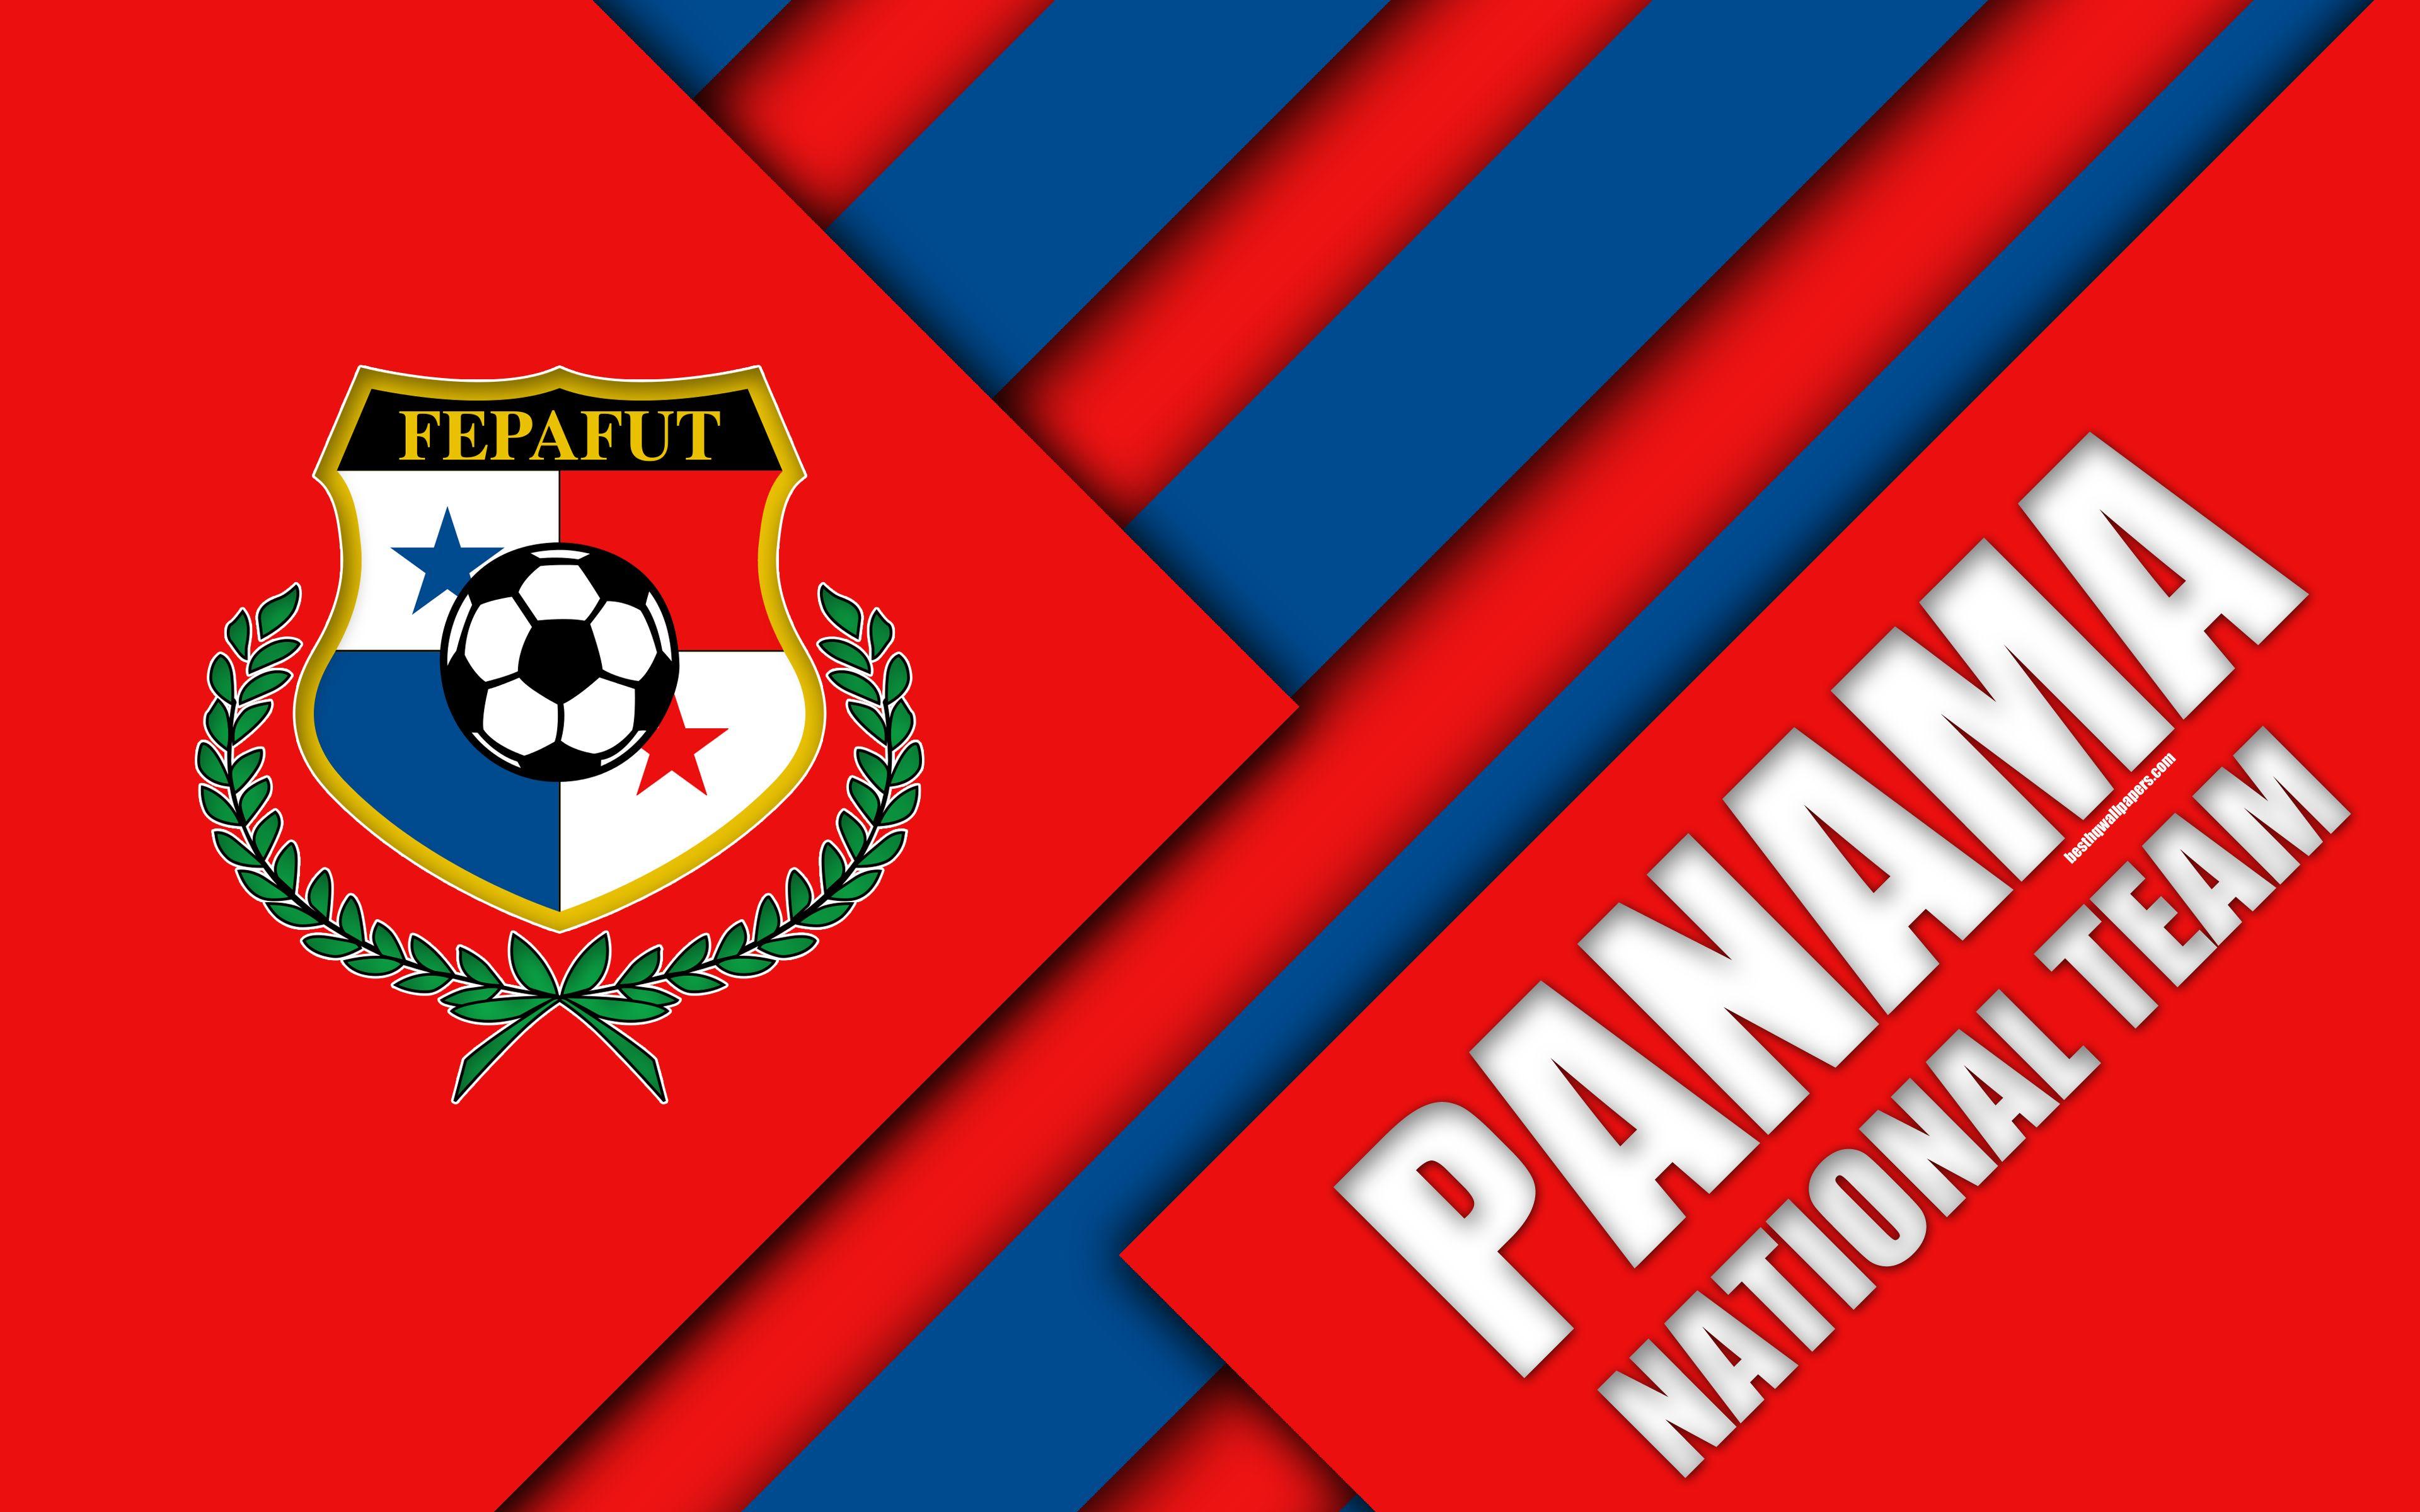 Download wallpaper Panama national football team, 4k, material